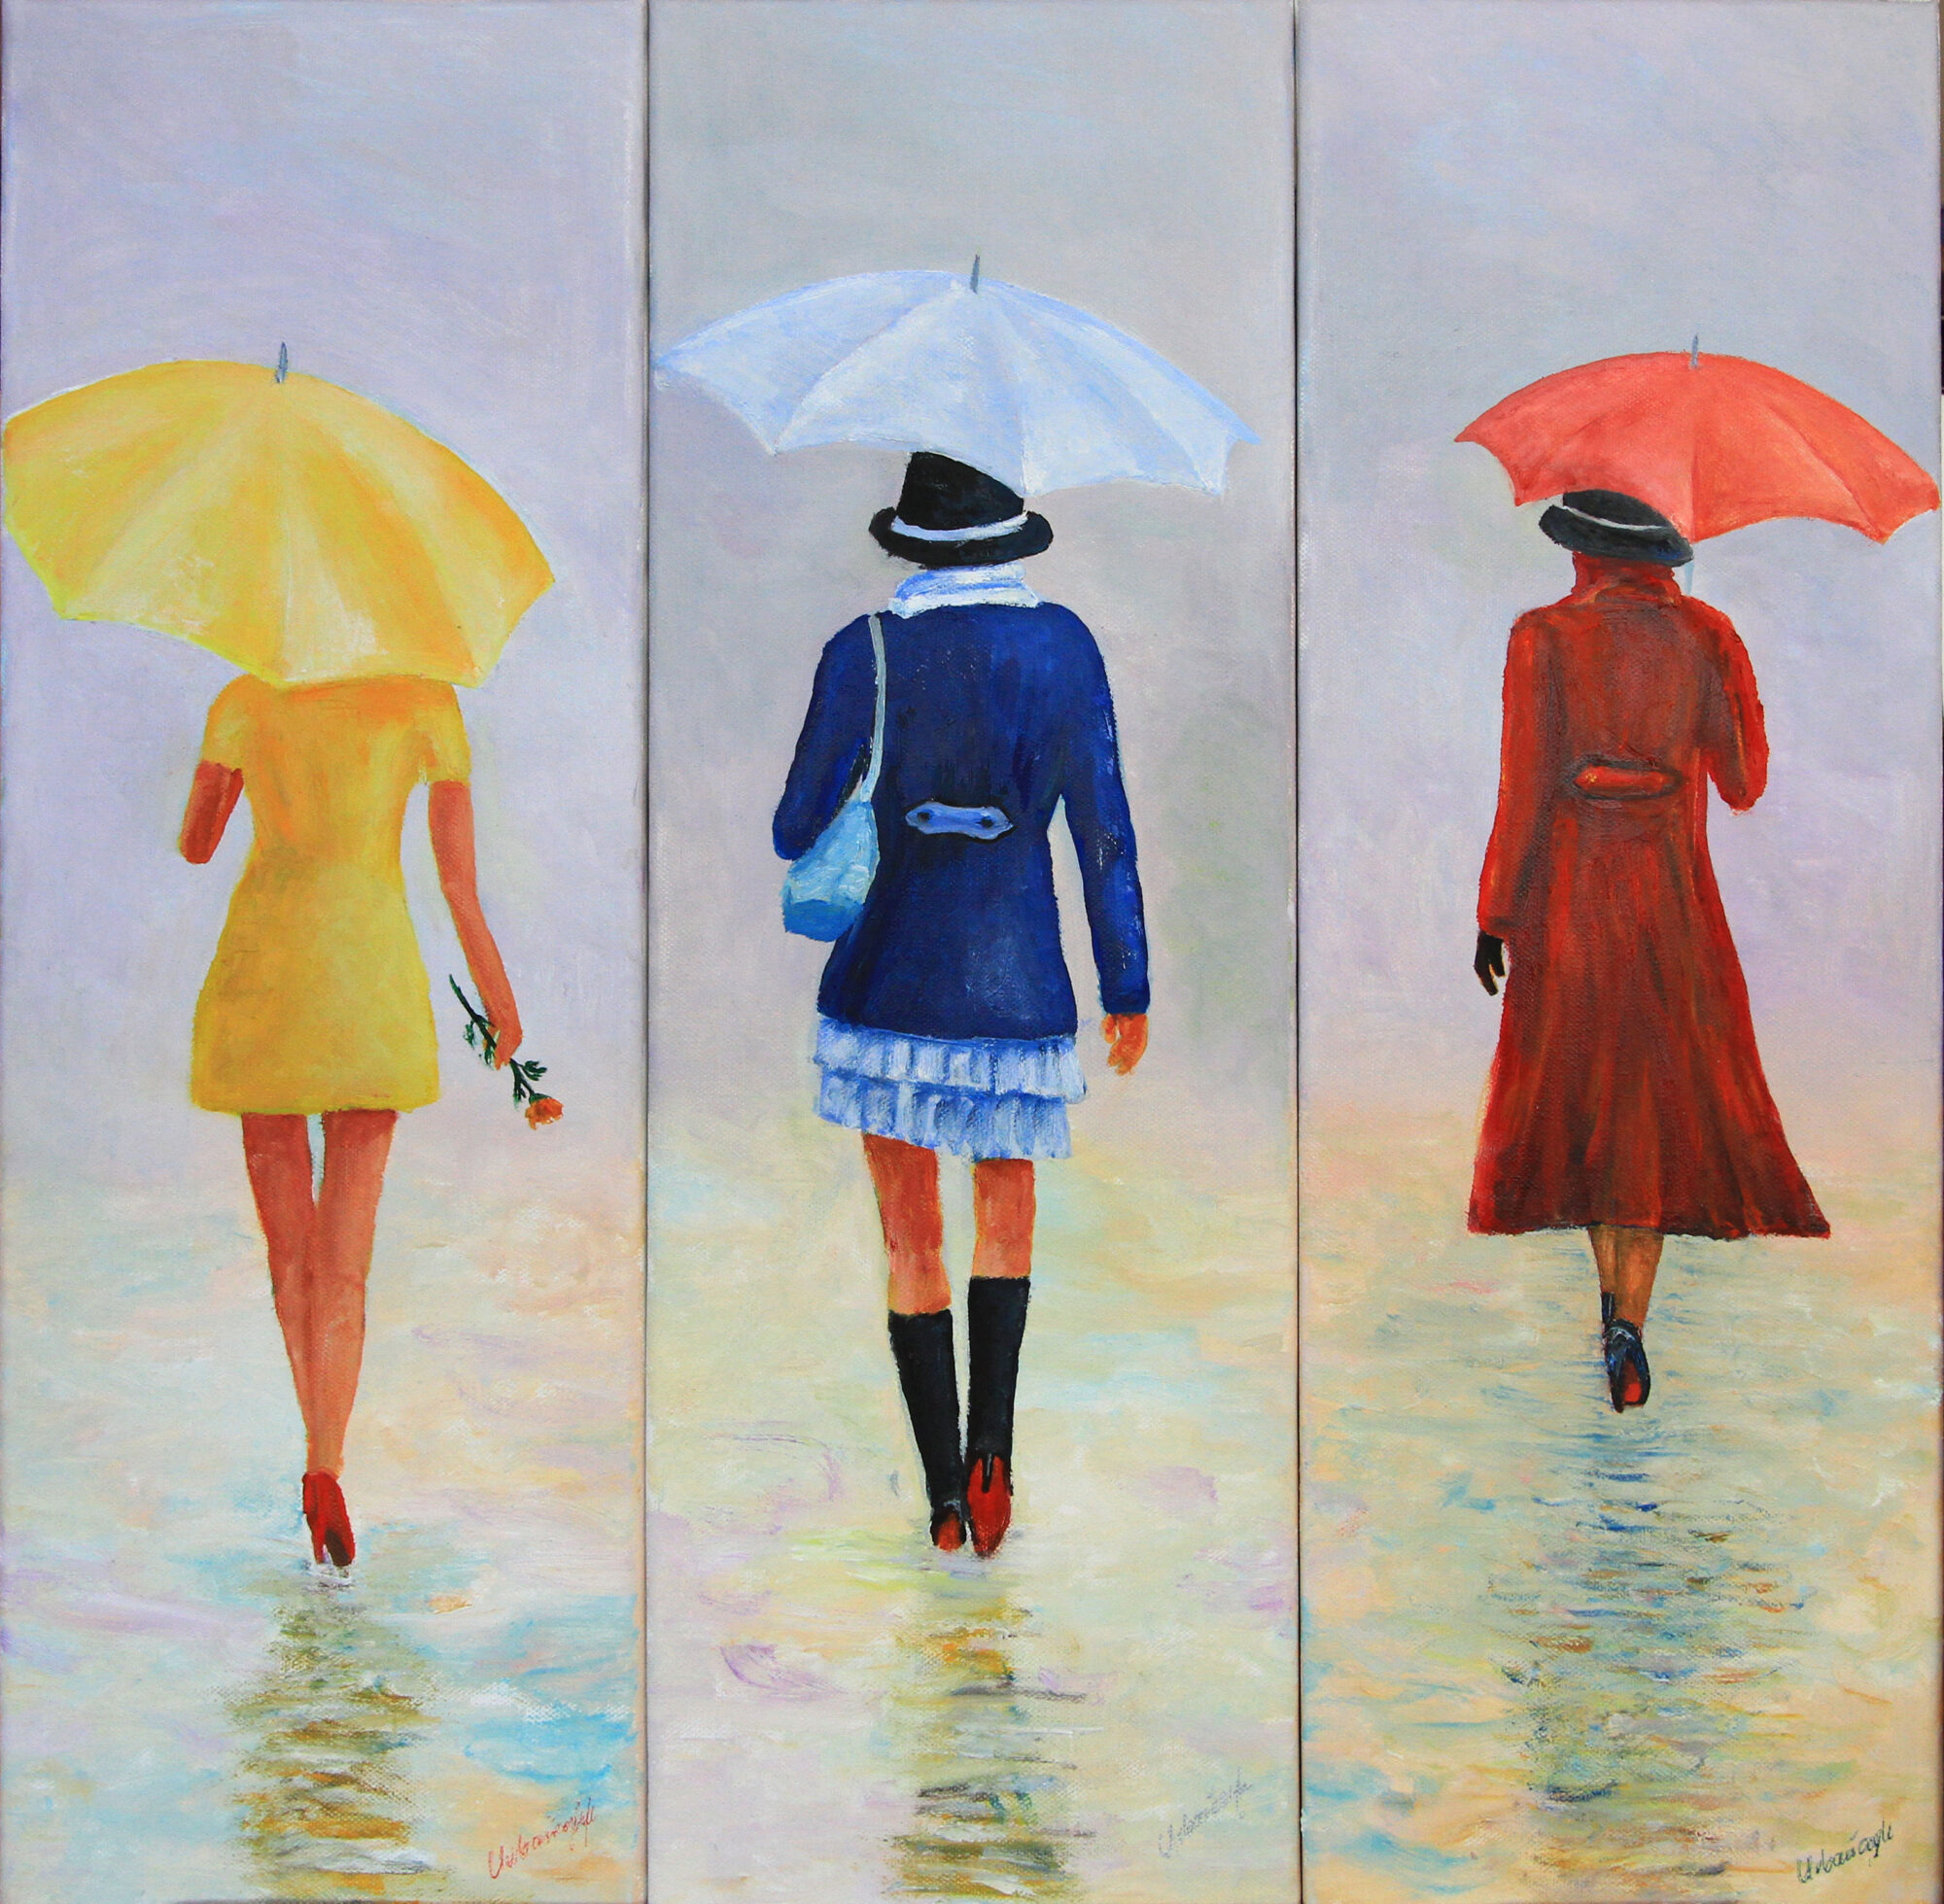 Trzy sylwetki kobiet: jedna ubrana na żółto, druga na niebiesko, a trzecie na czerwono. Wszystkie Panie trzymają parasol, który koreluje z kolorem ubrań